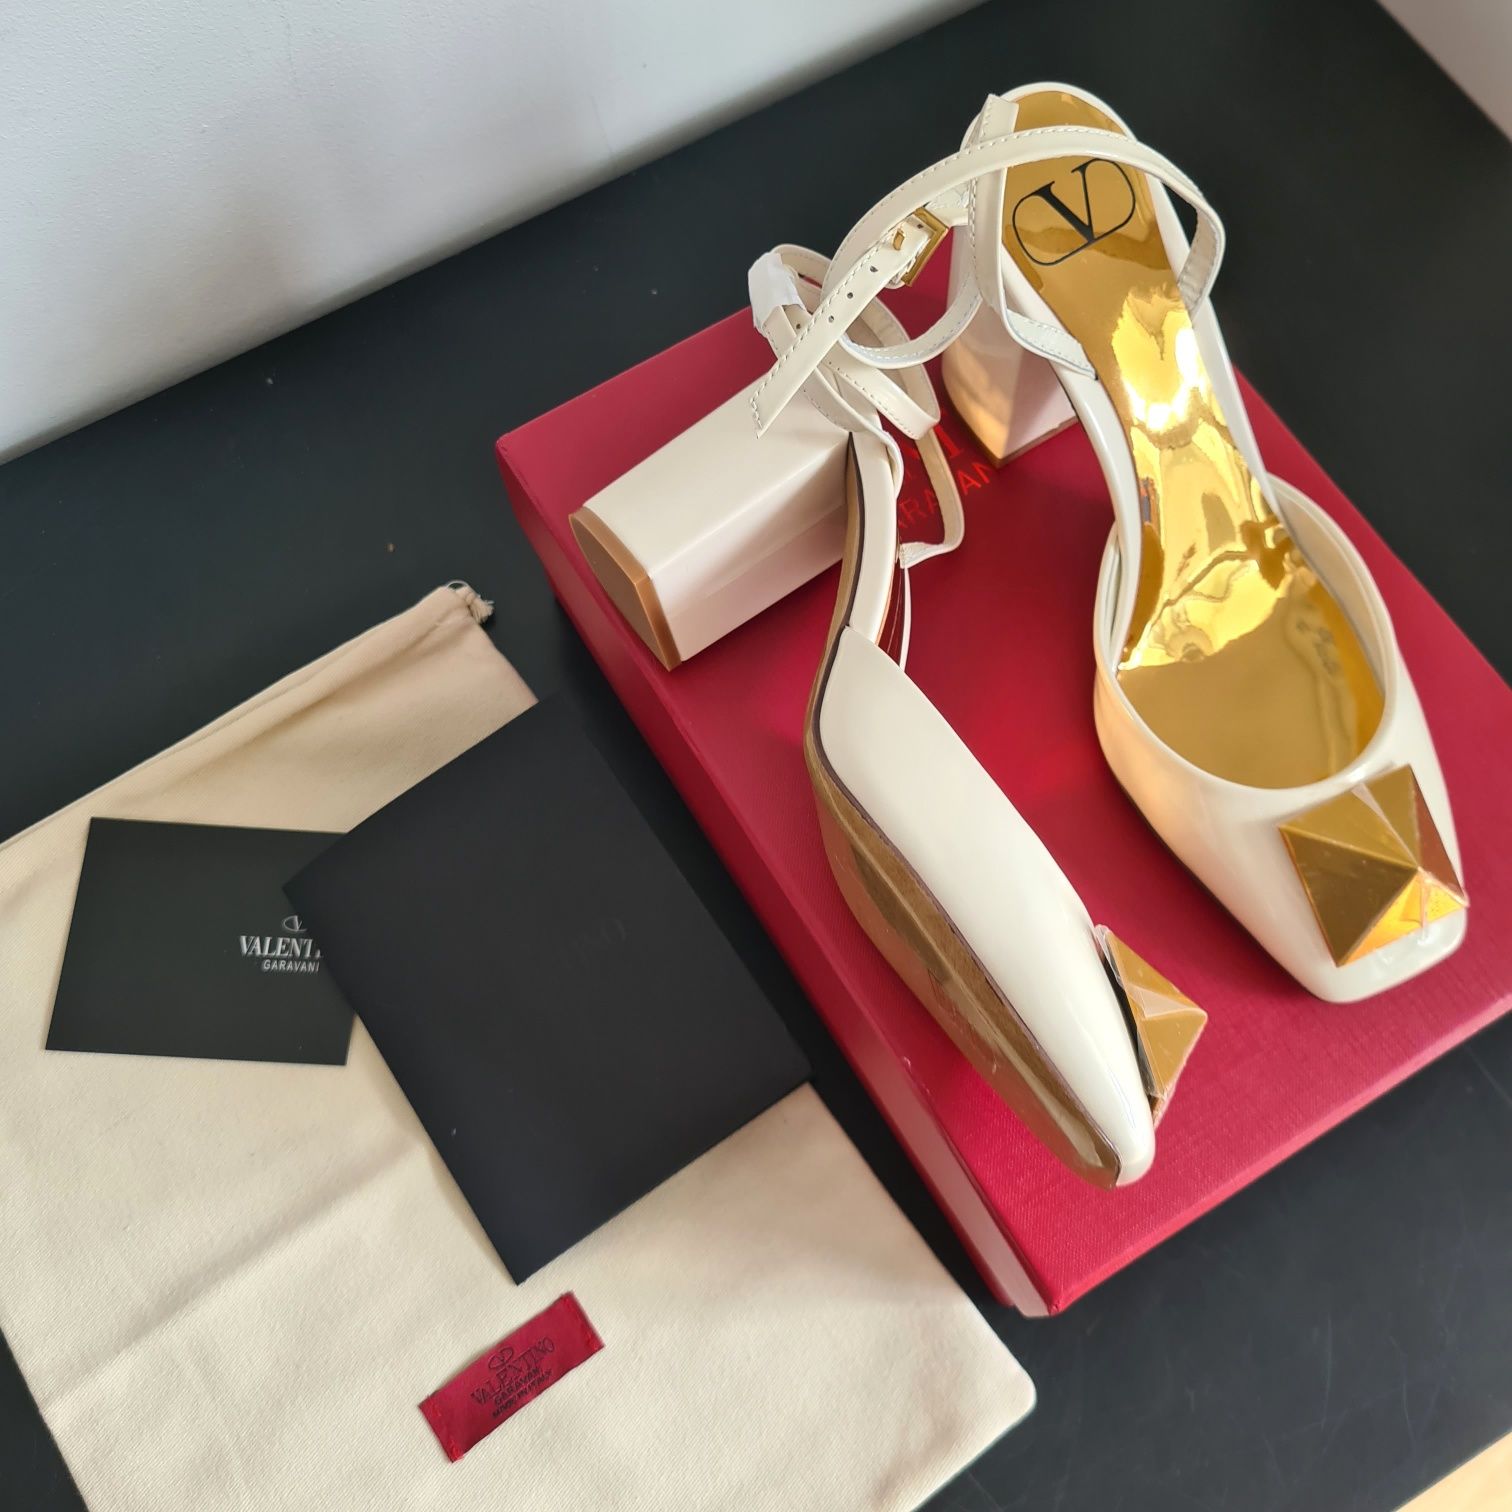 Valentino Sandals 9 cm - size 38/ piele naturala/accessorizare complet